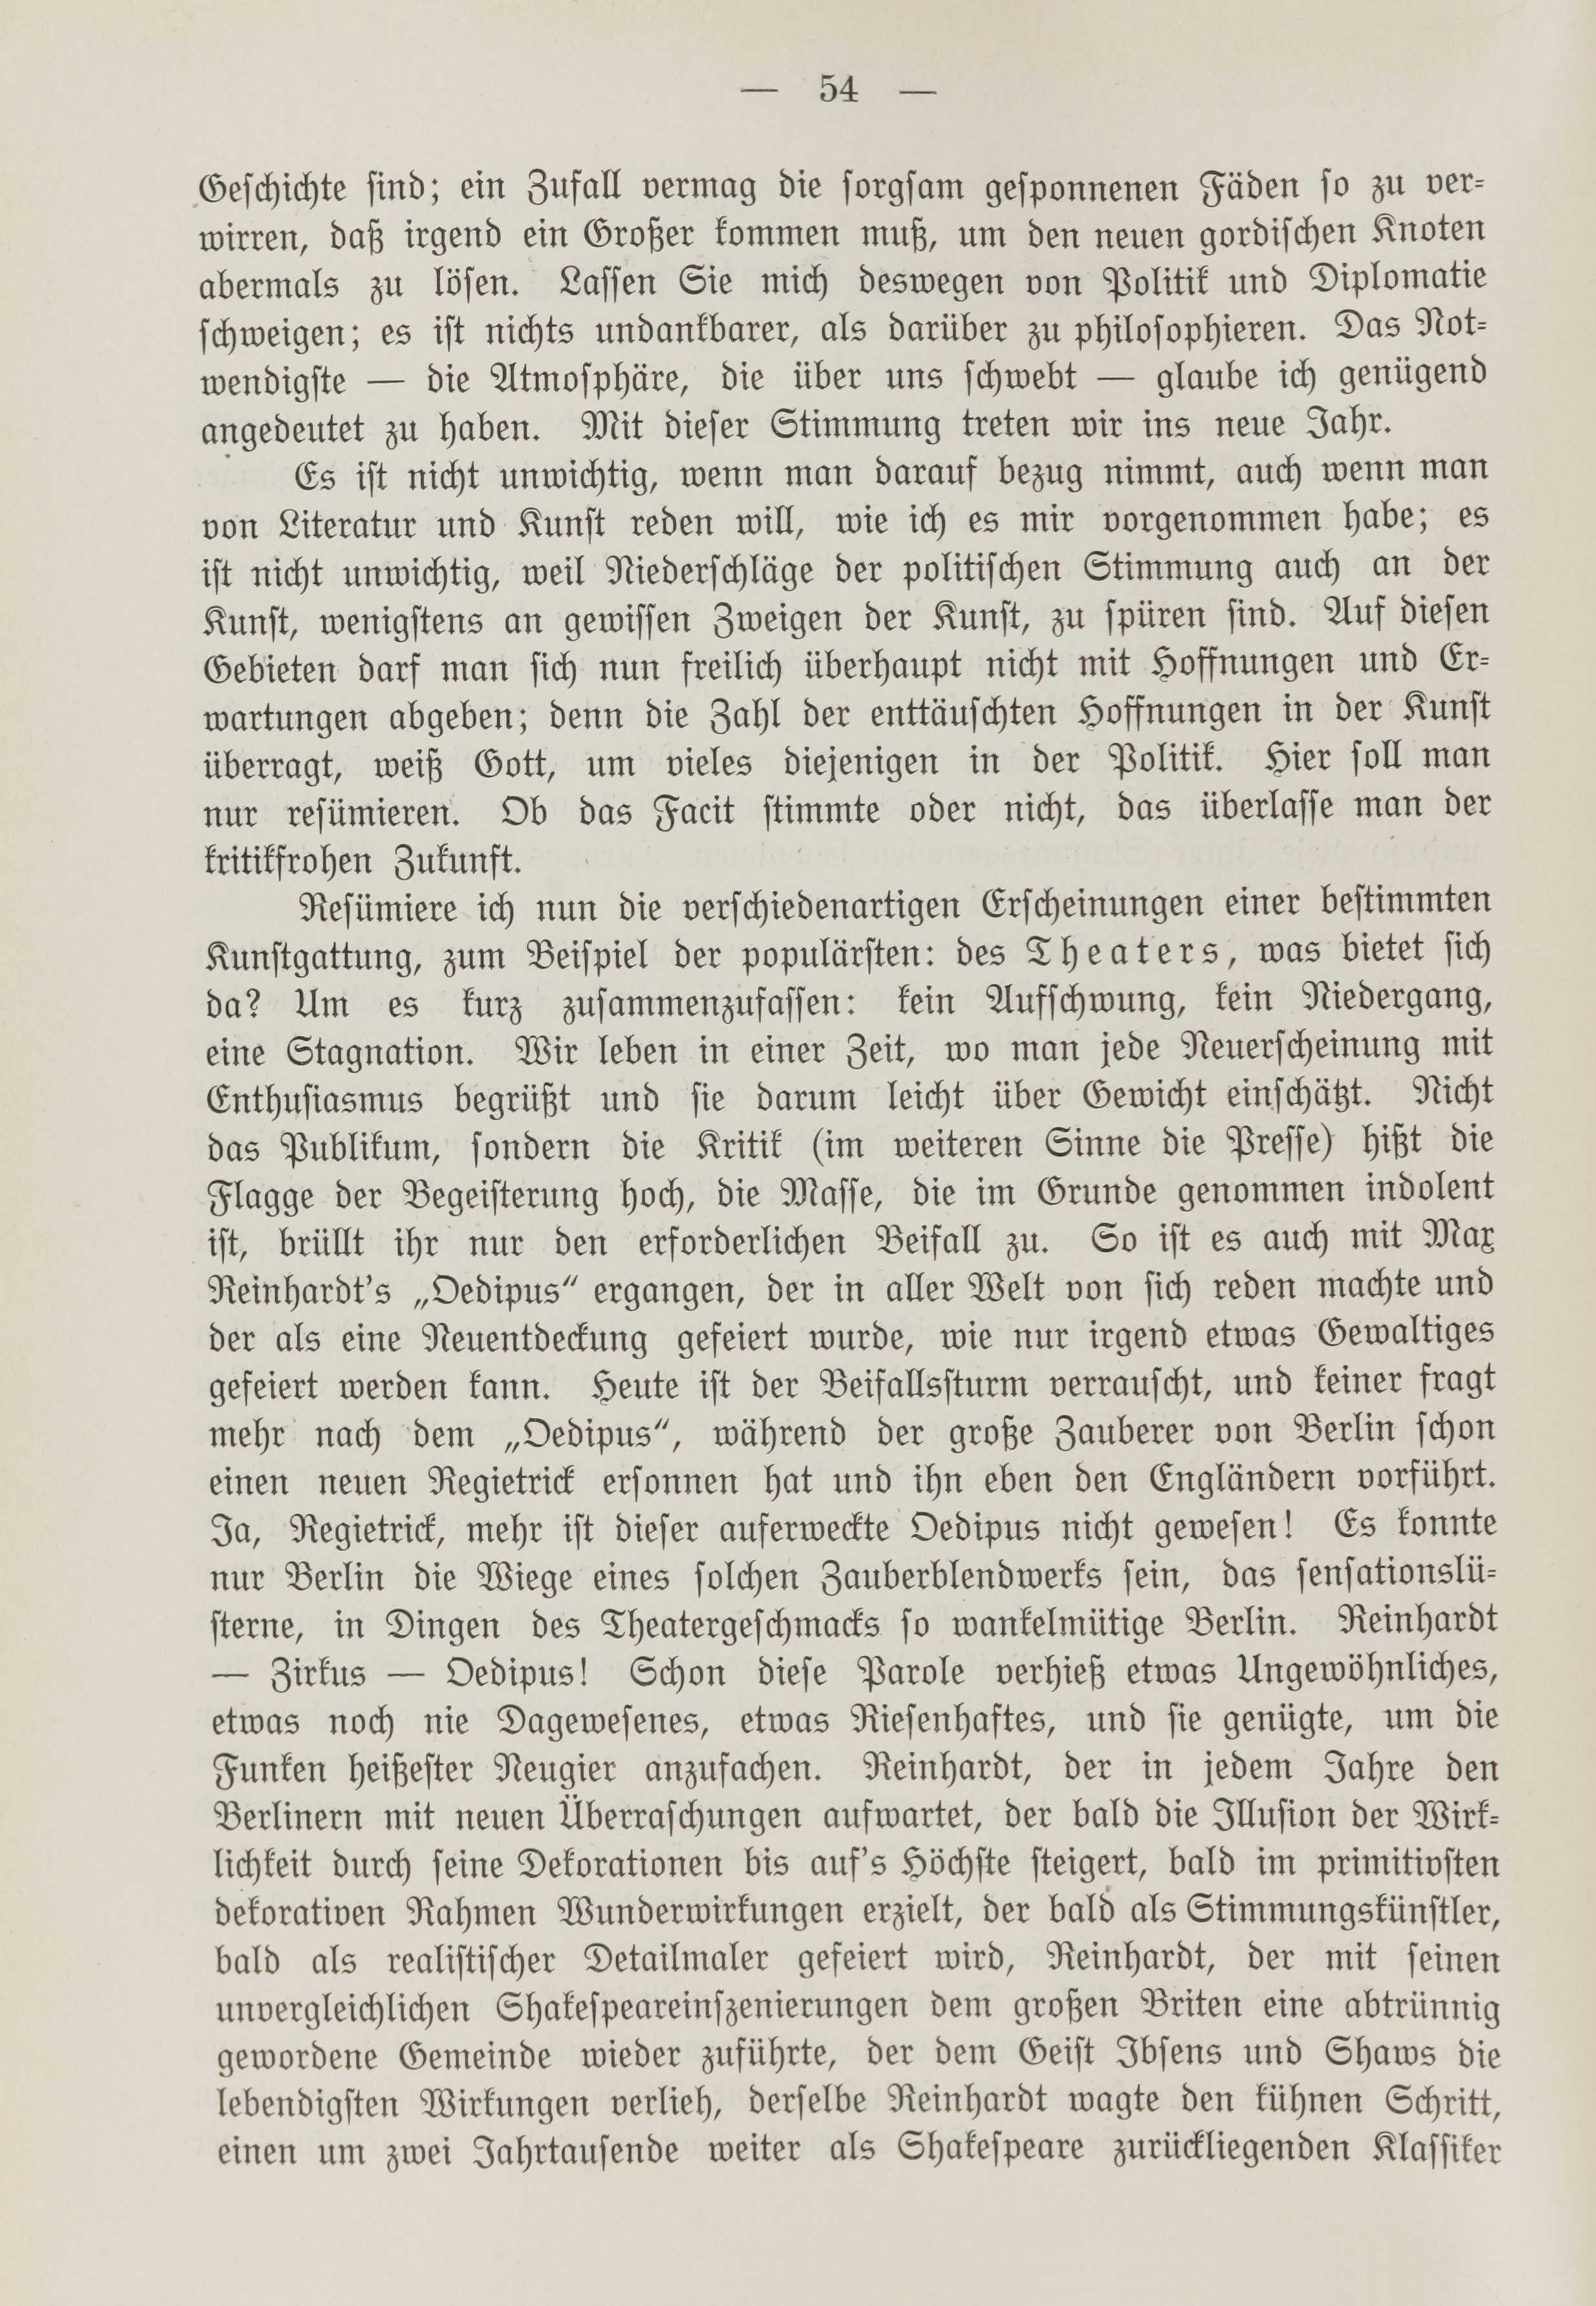 Deutsche Monatsschrift für Russland [1] (1912) | 61. (54) Haupttext